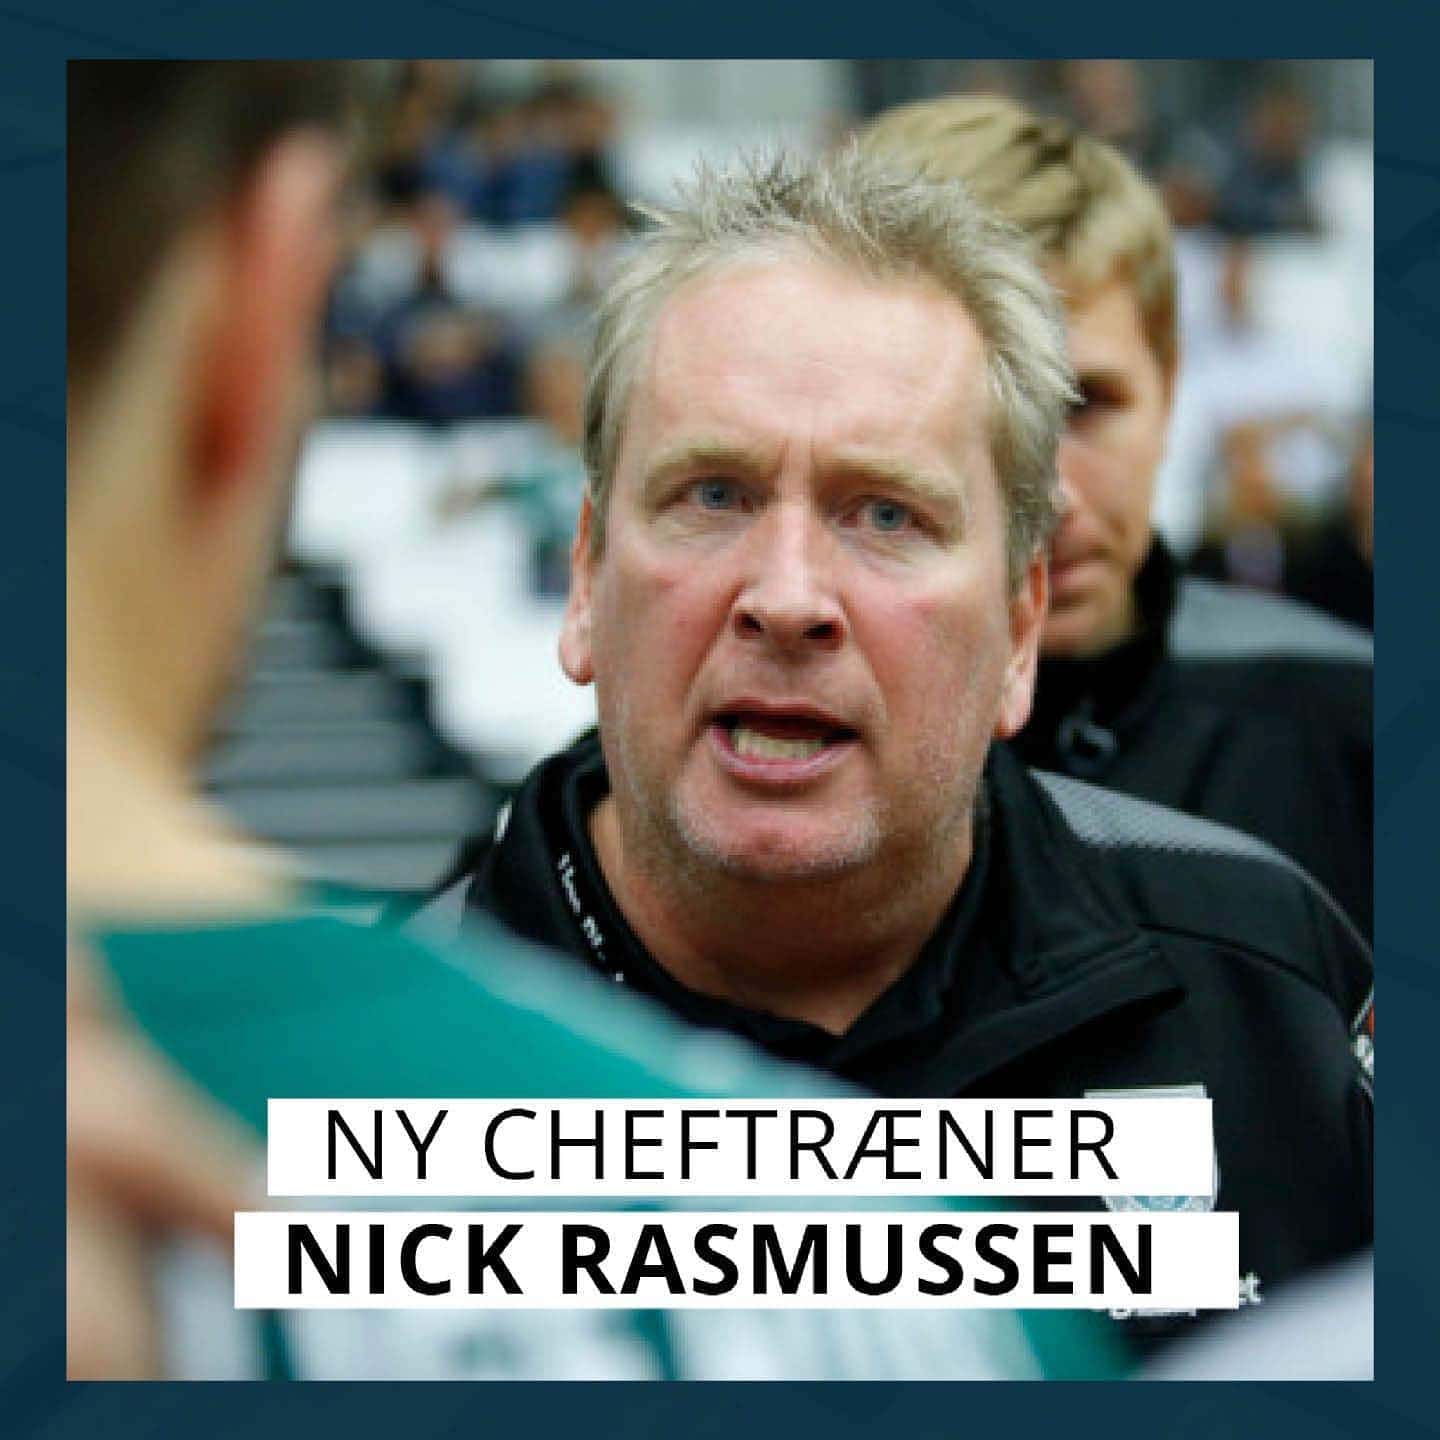 Nick Rasmussen - Ny cheftræner i Skanderborg Aarhus Håndbold